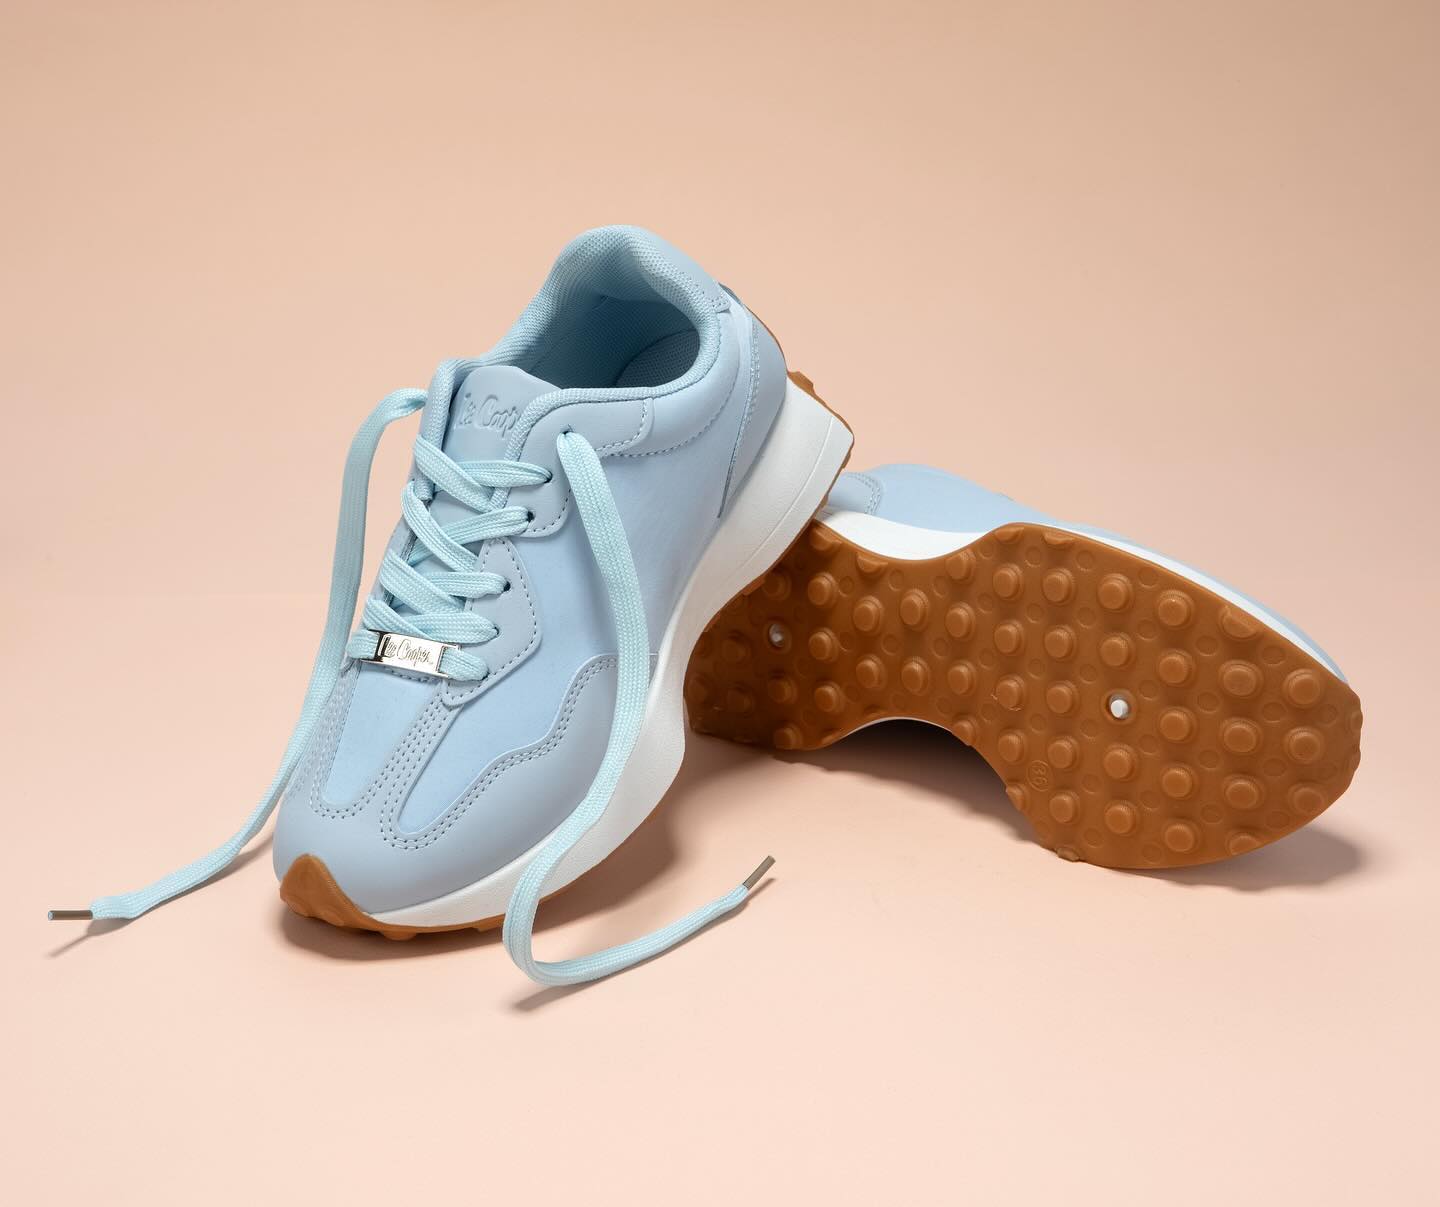 Sport Casual 🤍
מגוון נעלי סניקרס של המותגים המובילים מחכים לכם עכשיו בסניפים ובאתר ״גלי״ 💚
#WalkInGali